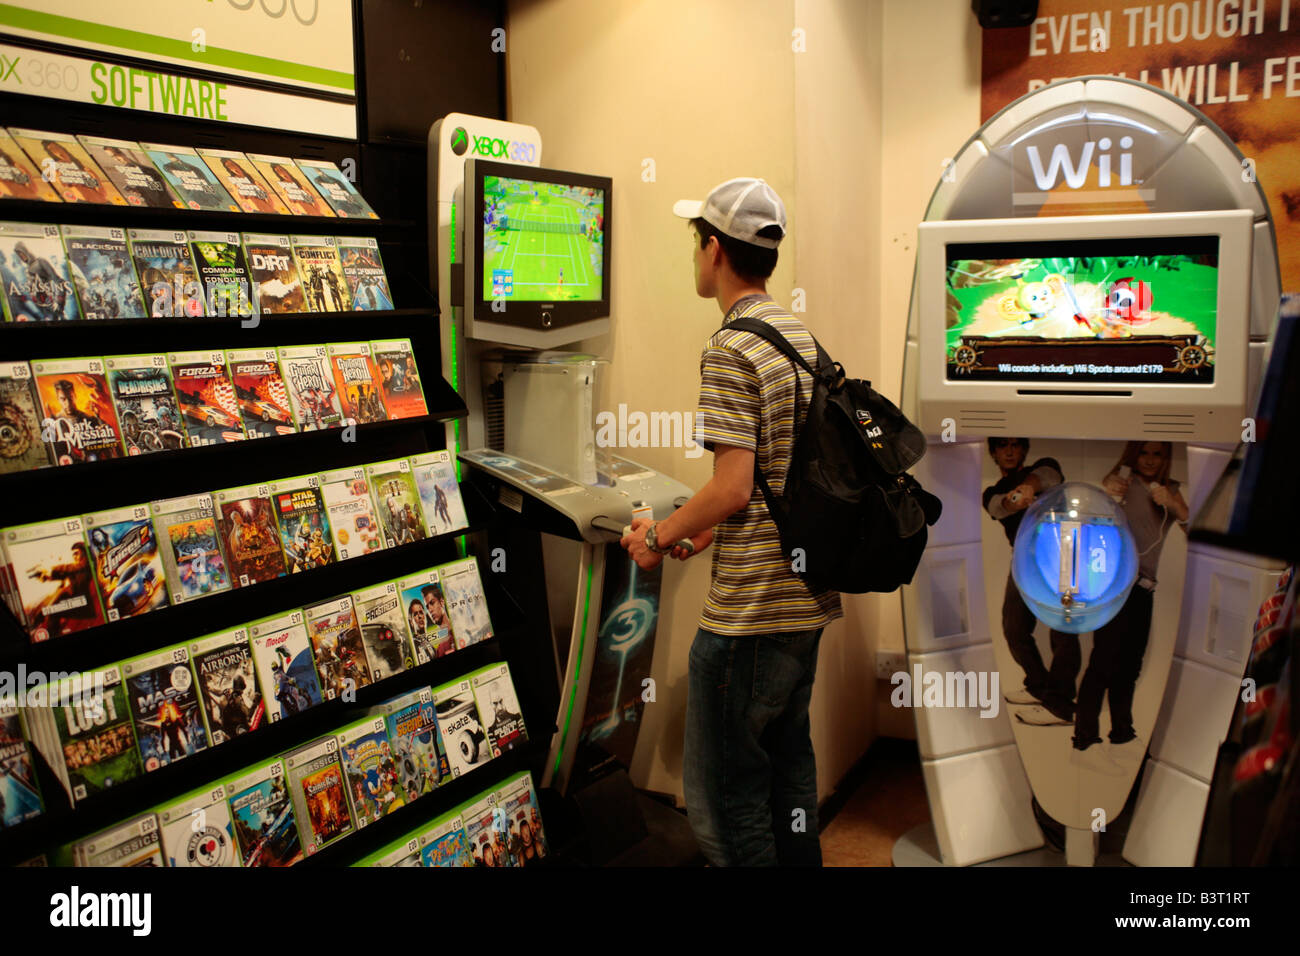 Juegos wii en venta en una tienda de juegos, REINO UNIDO Fotografía de  stock - Alamy